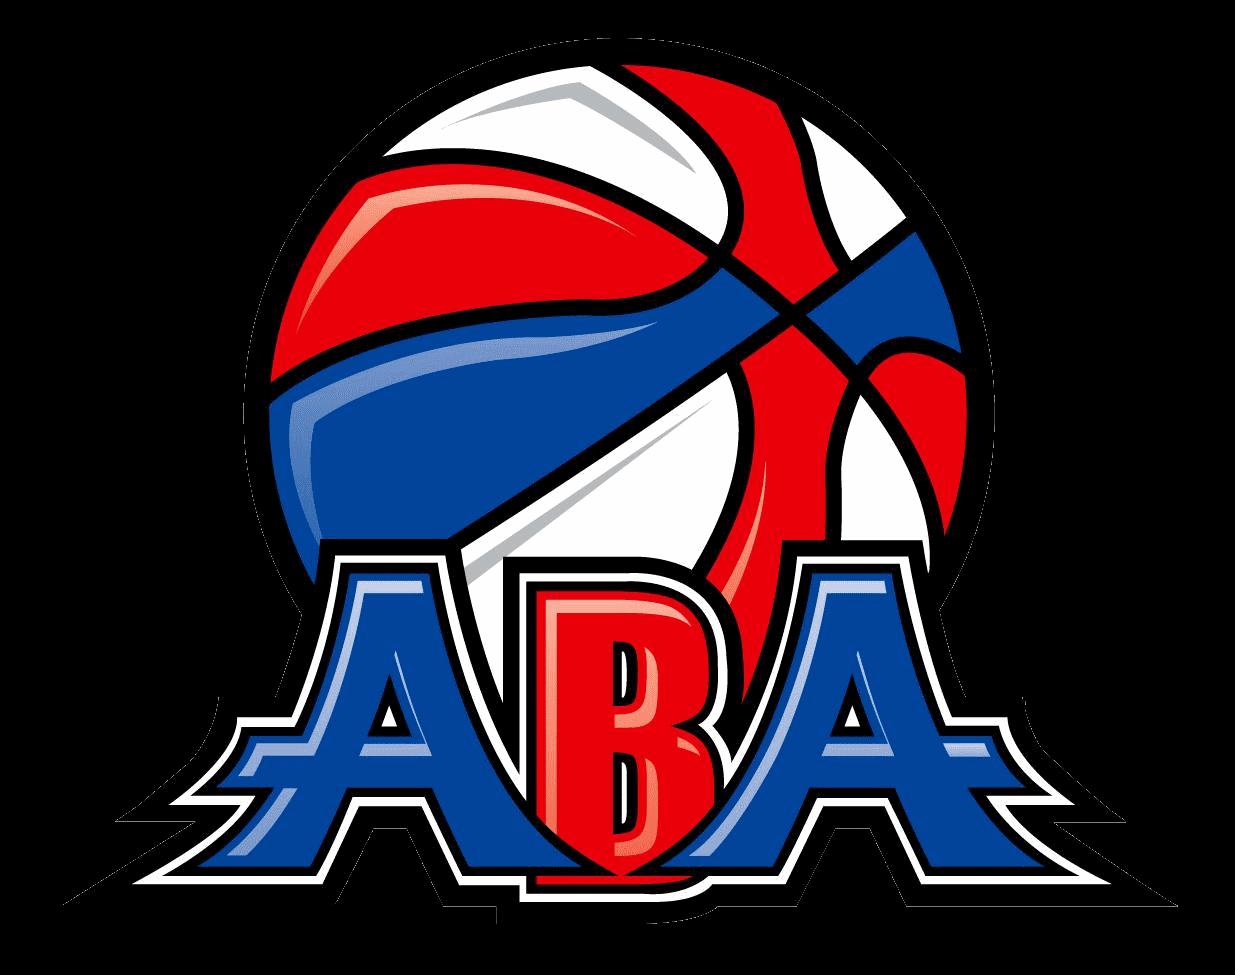 美國籃球協會(21世紀新成立的美國籃球聯賽)